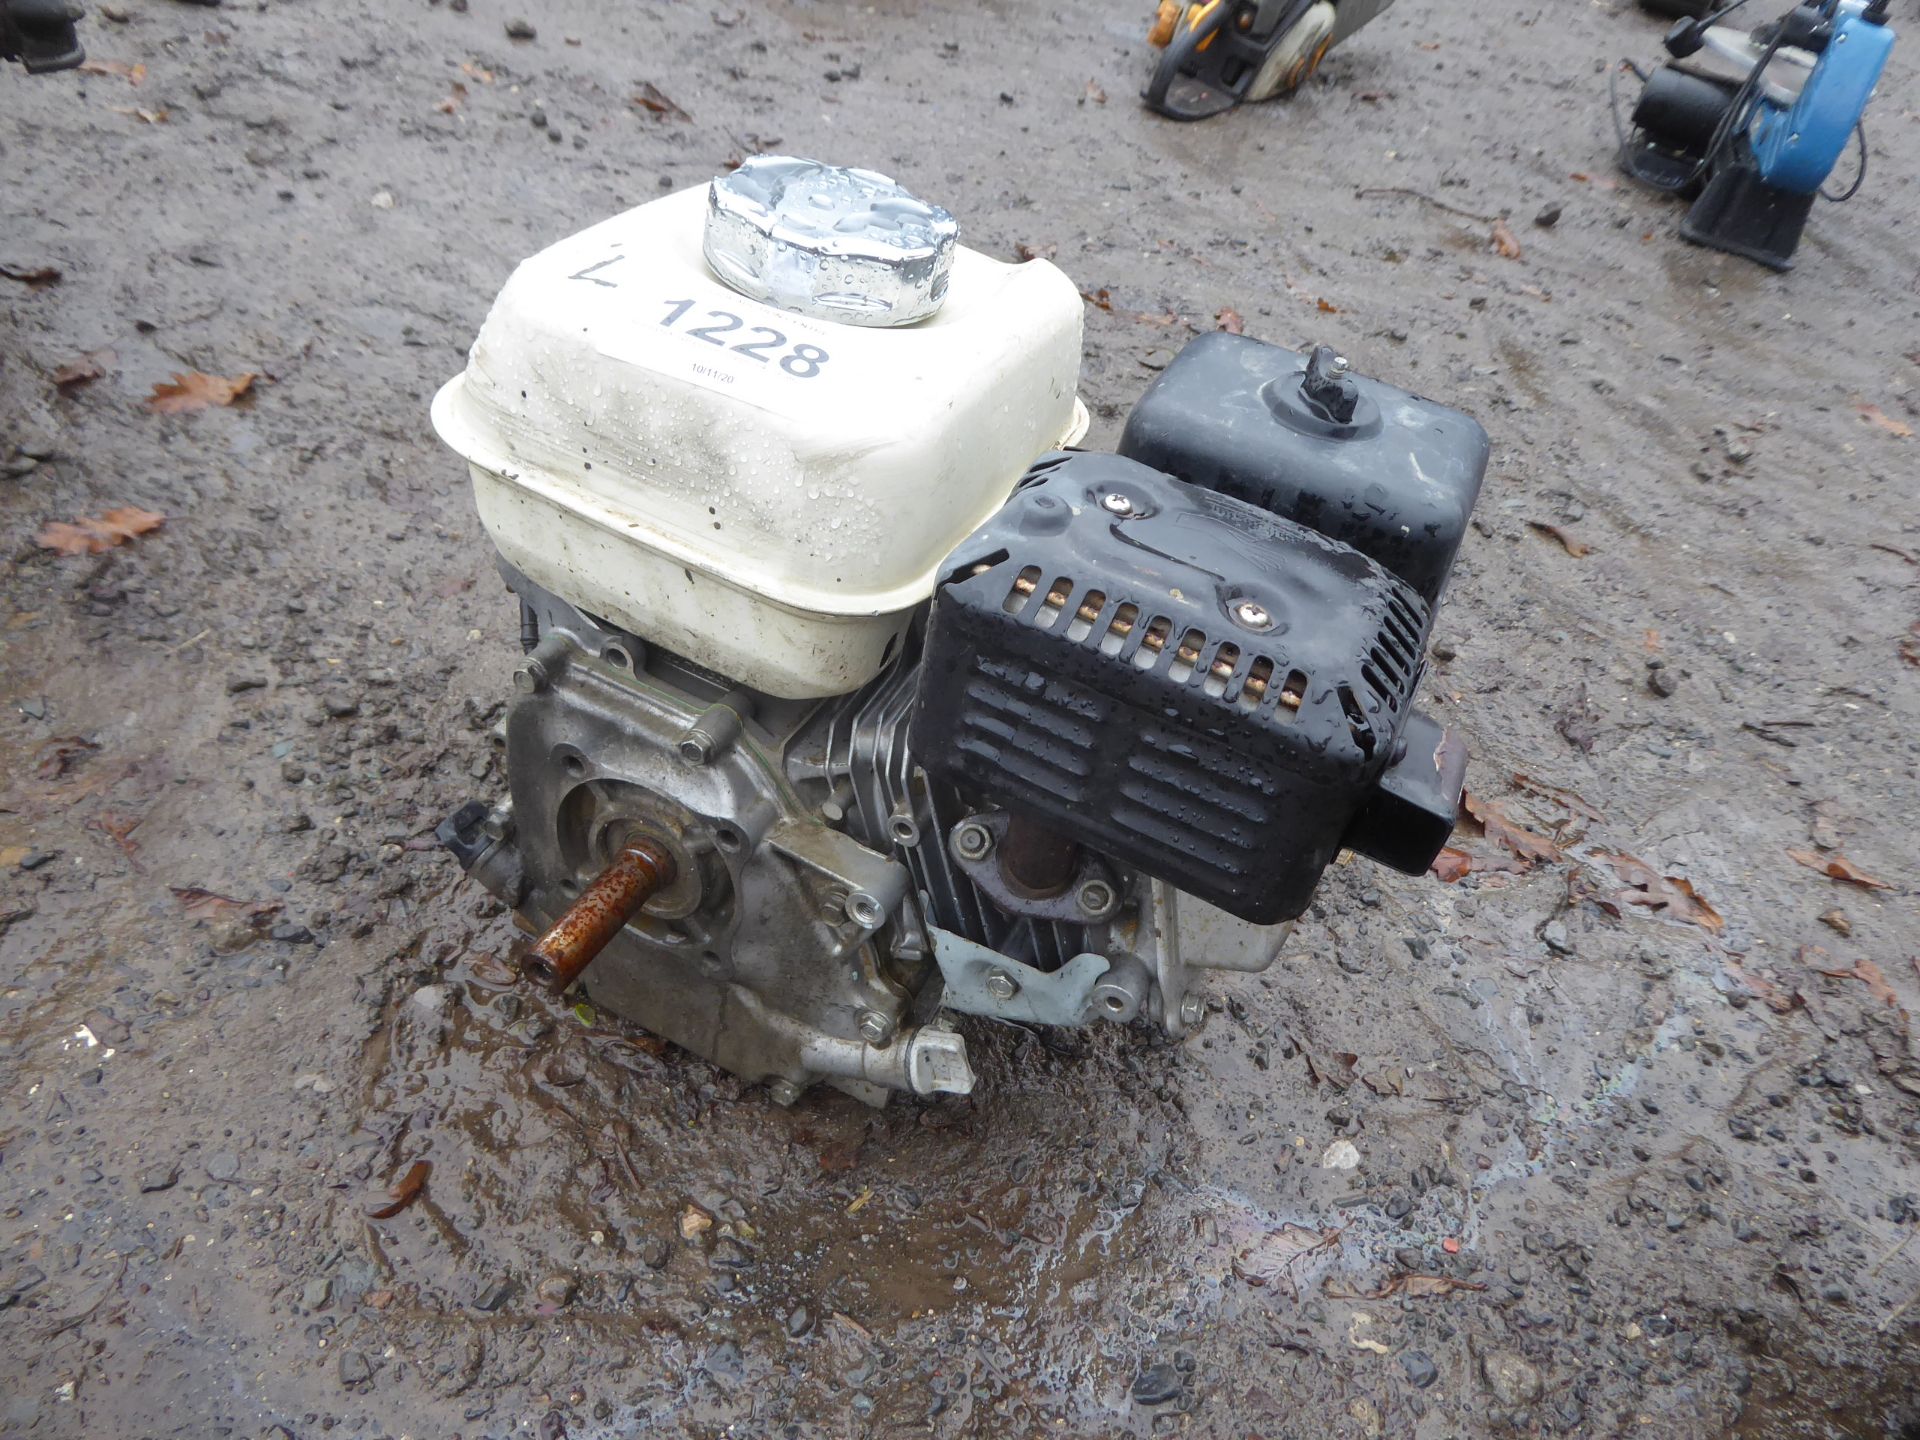 Honda GX 120 petrol engine 3/4" shaft